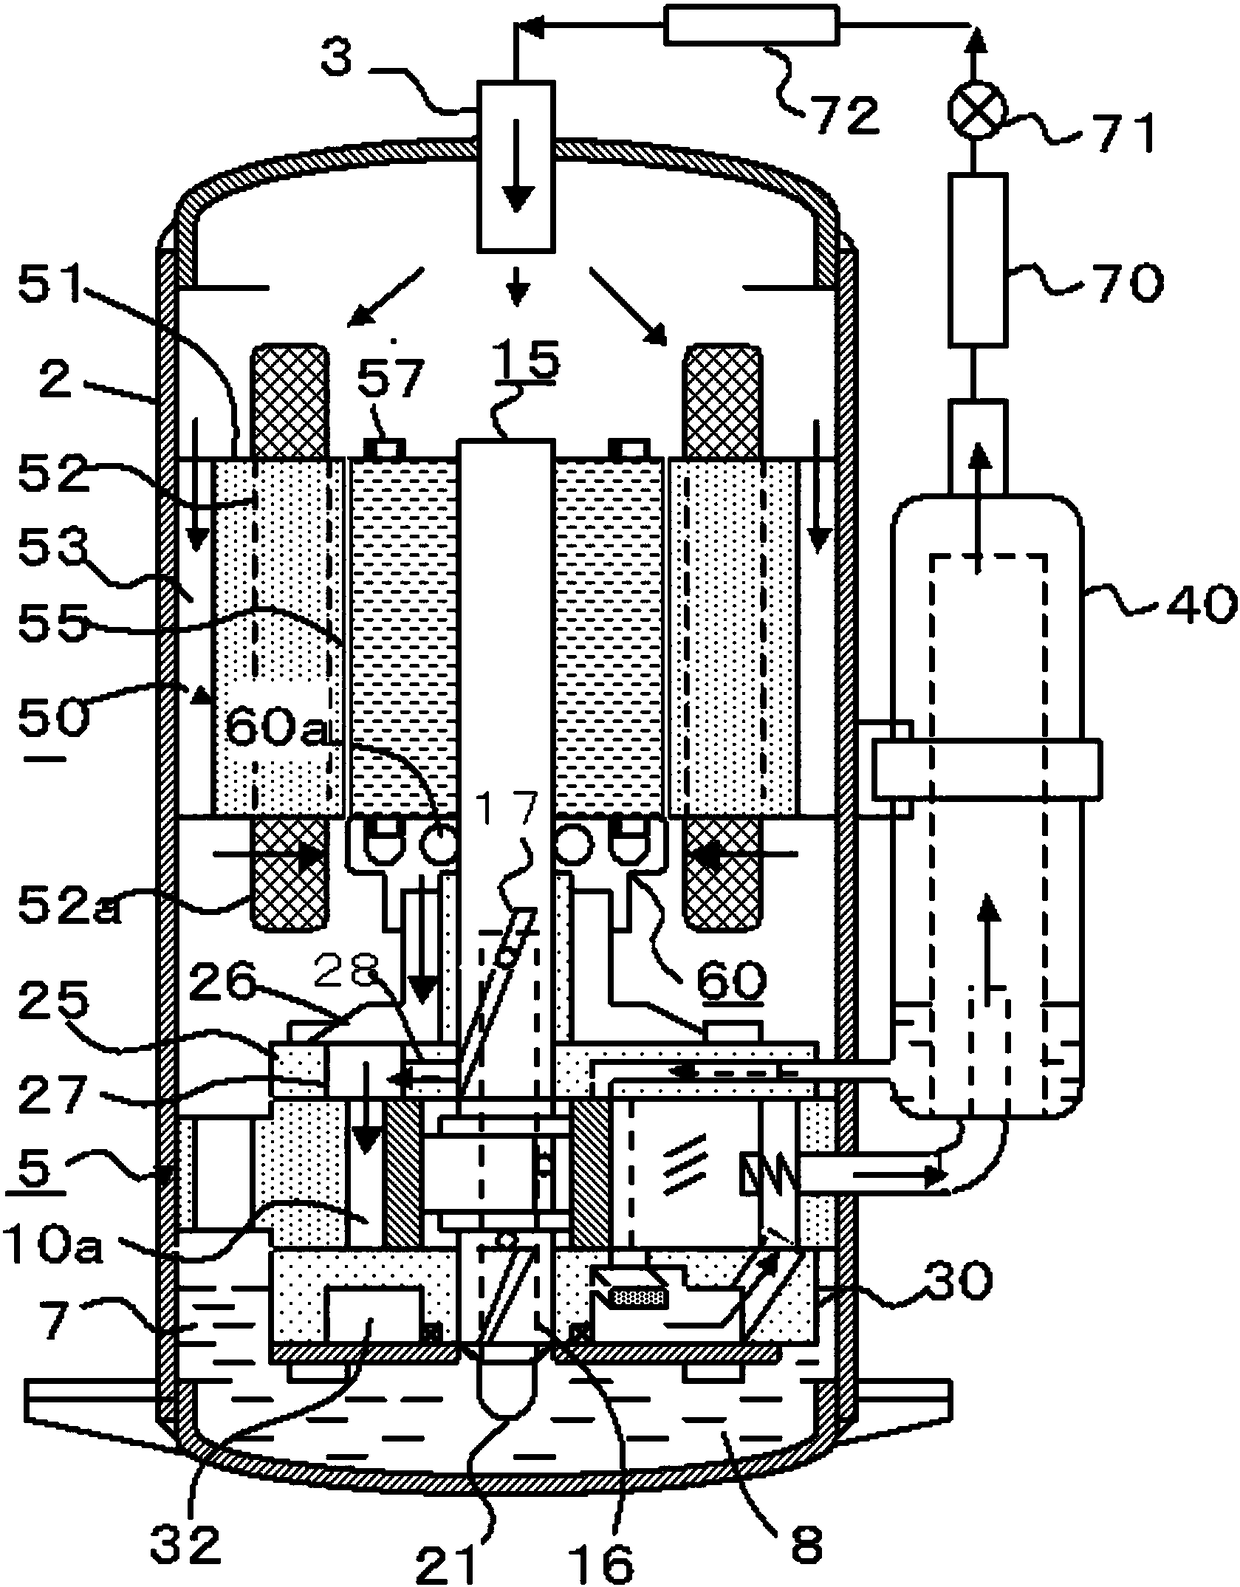 Rotary compressor and refrigeration system having same